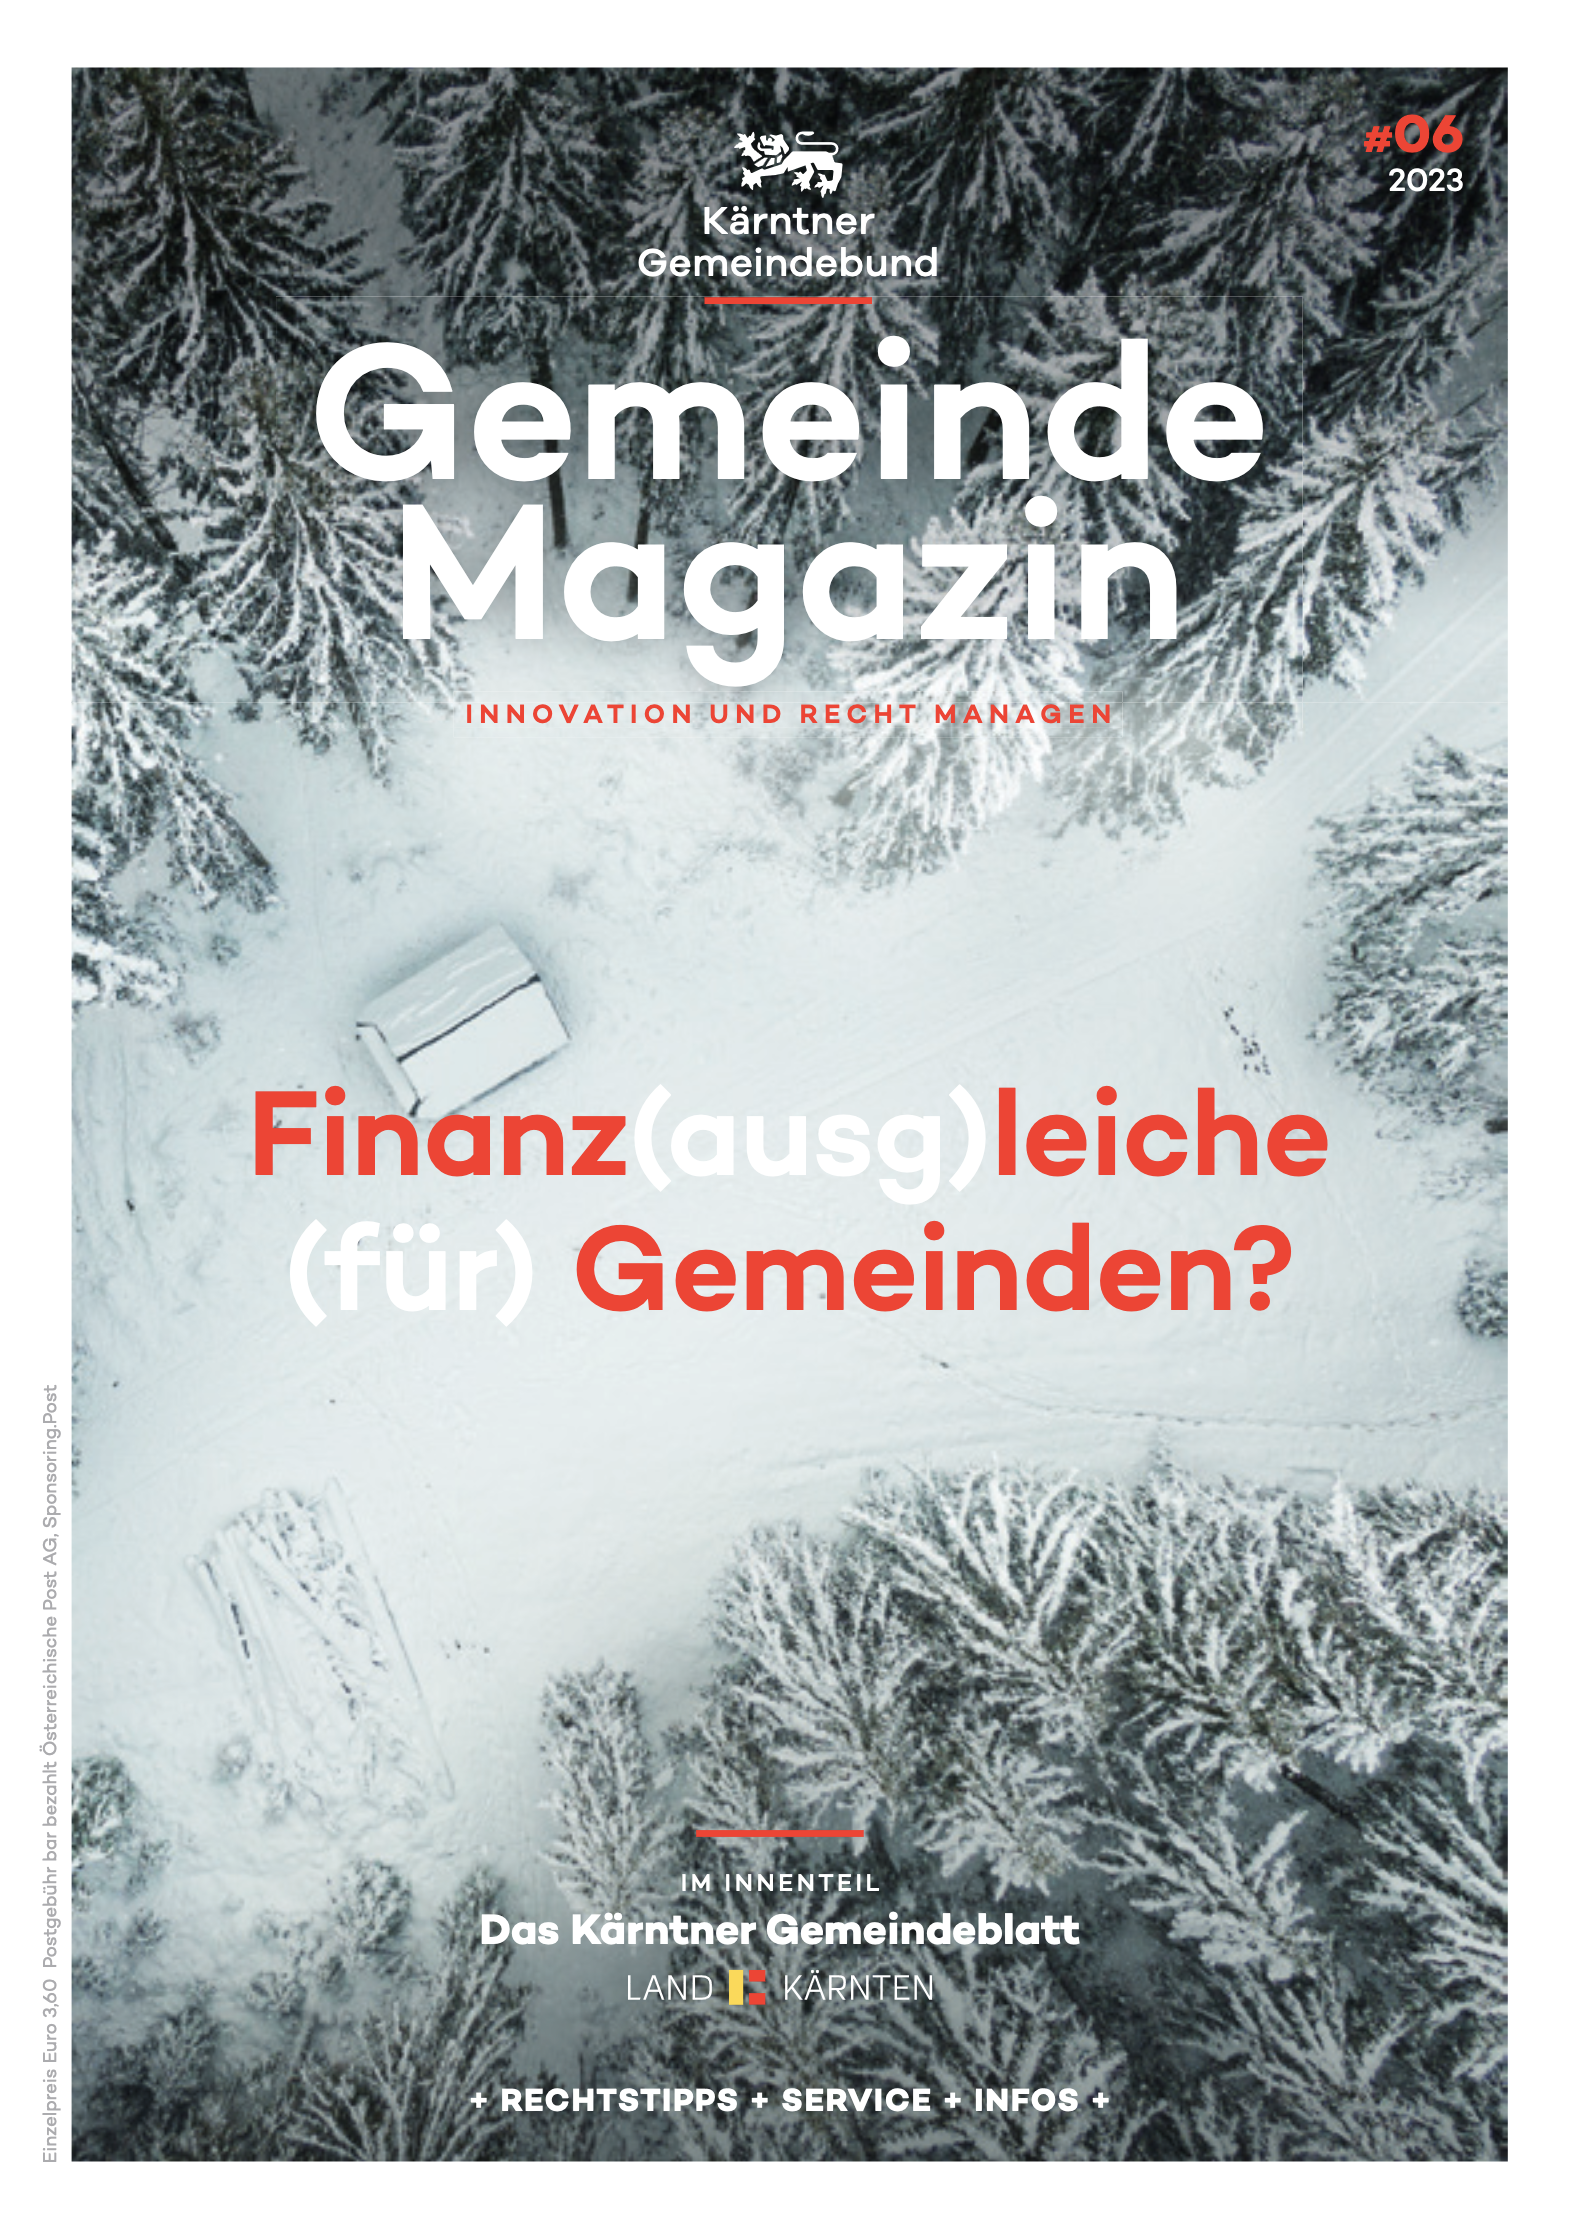 Kärntner Gemeindebund Gemeindemagazin Ausgabe 06 von 2023 zum Thema Finanzausgleiche für Gemeinden